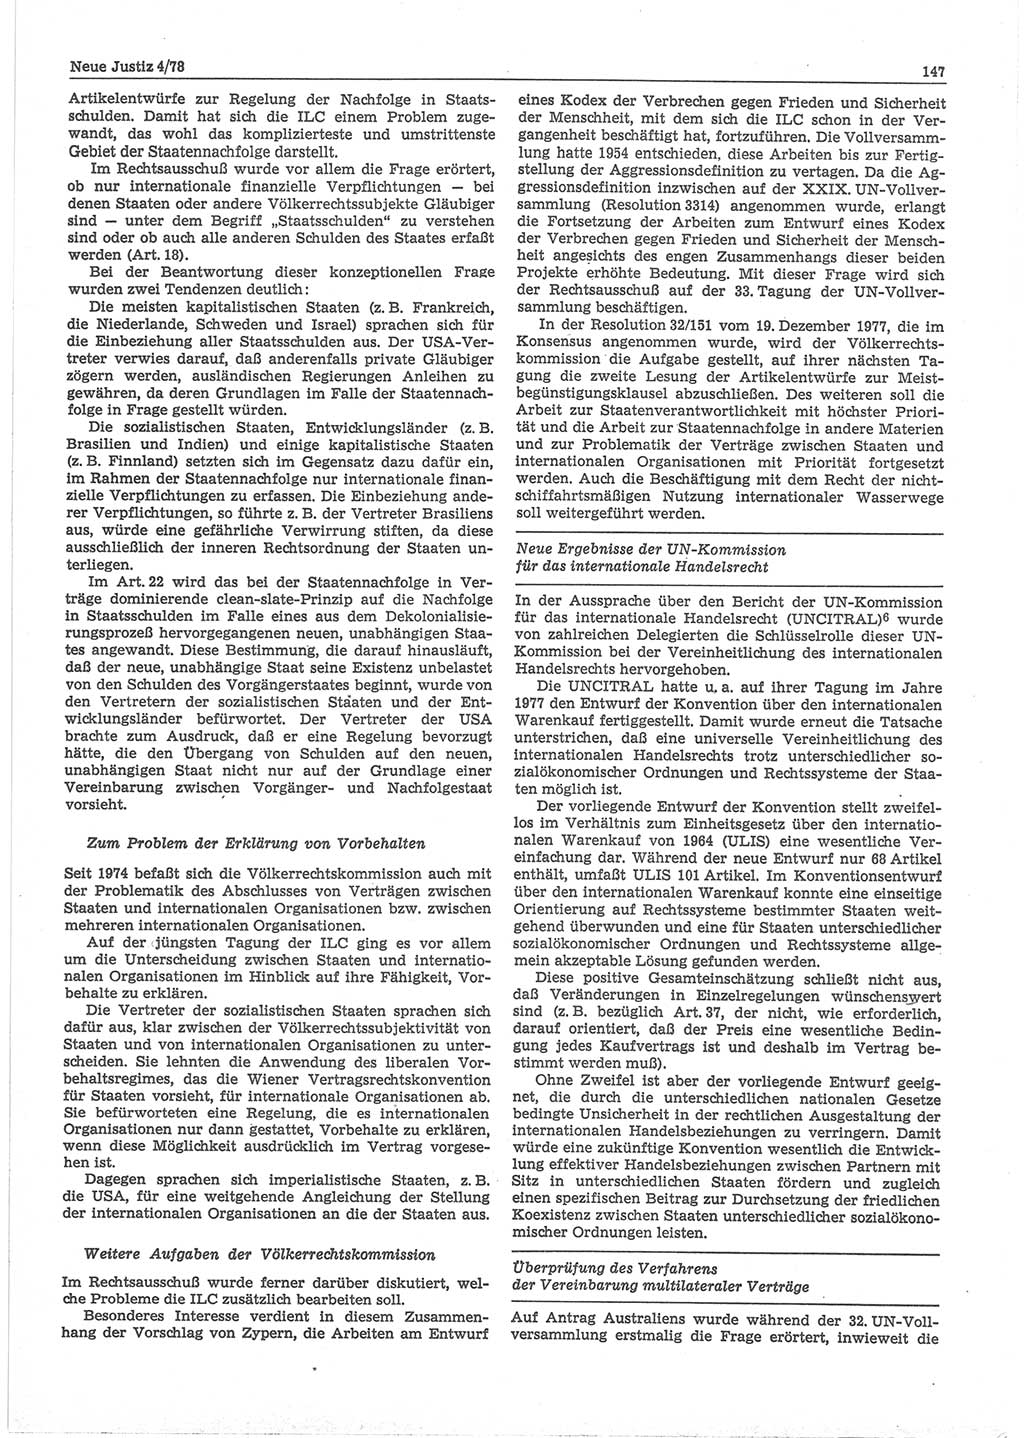 Neue Justiz (NJ), Zeitschrift für sozialistisches Recht und Gesetzlichkeit [Deutsche Demokratische Republik (DDR)], 32. Jahrgang 1978, Seite 147 (NJ DDR 1978, S. 147)